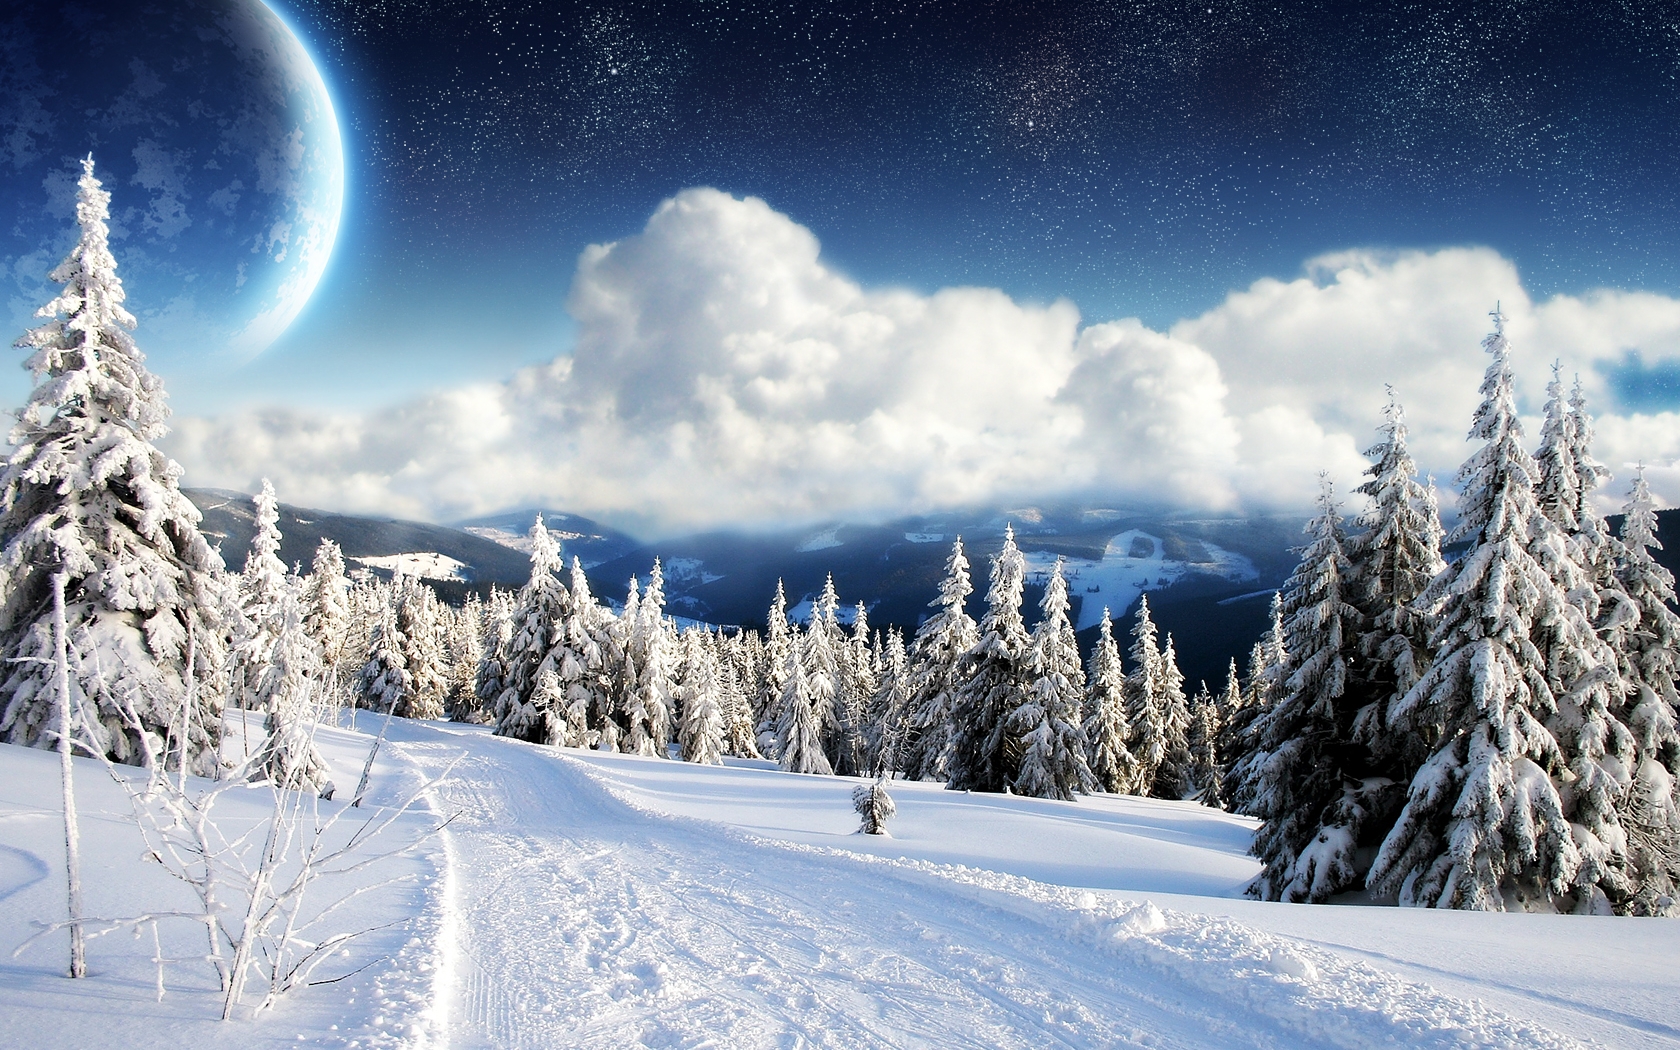 Snowy winter landscape on a high-definition desktop wallpaper.